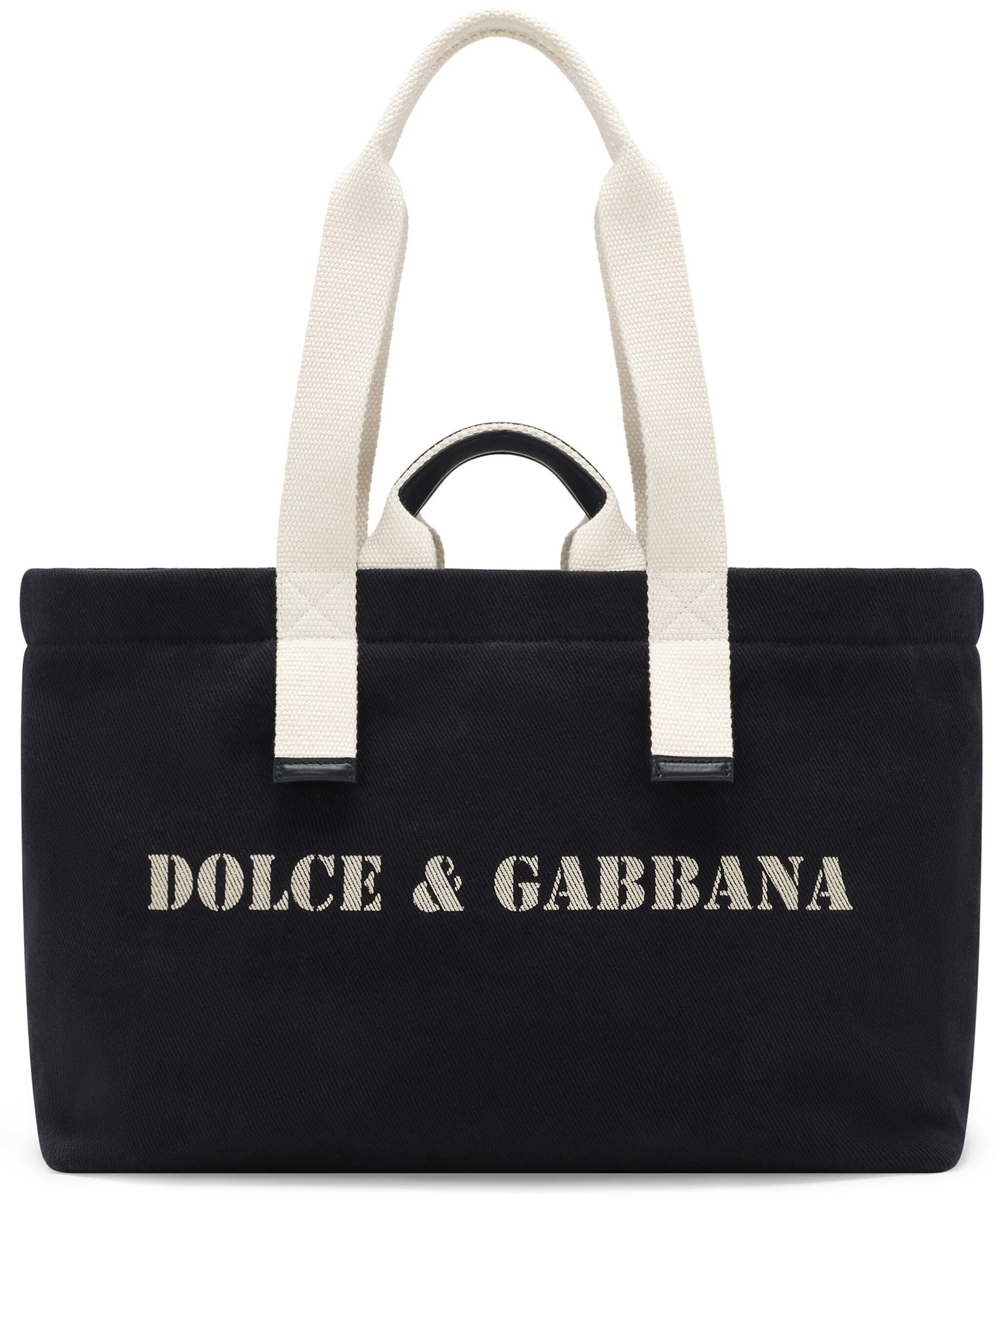 Dolce & Gabbana Shoulder Bag With Print In Black